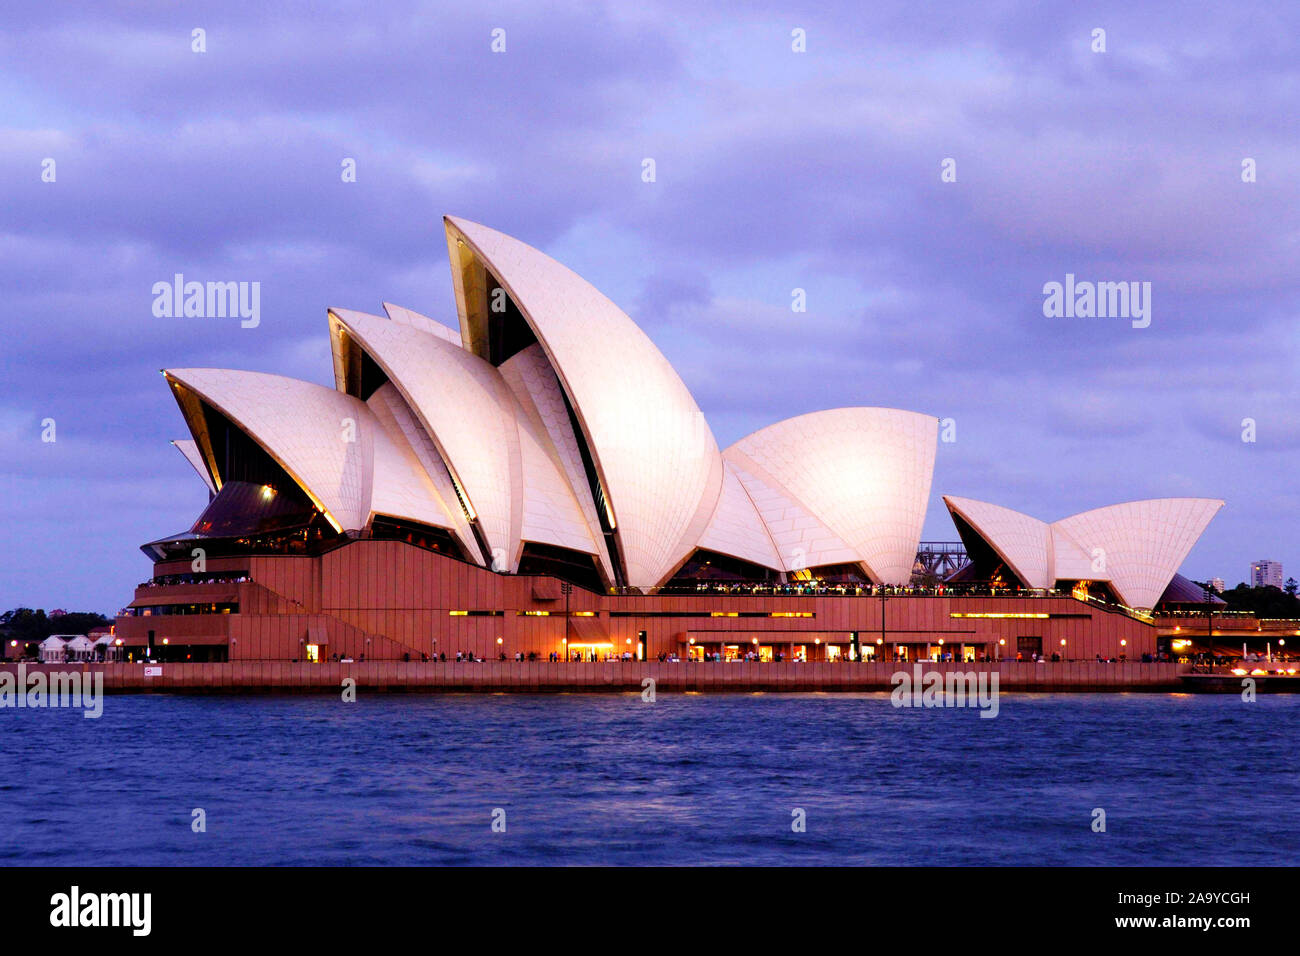 Australien, House of Opera, Sydney, Hafen, Oper, City, Metropole, Bauwerk, Opernhaus, Modern, Baukunst, Architektur, Nachtaufnahme, Beleuchtung, Neon, Stock Photo